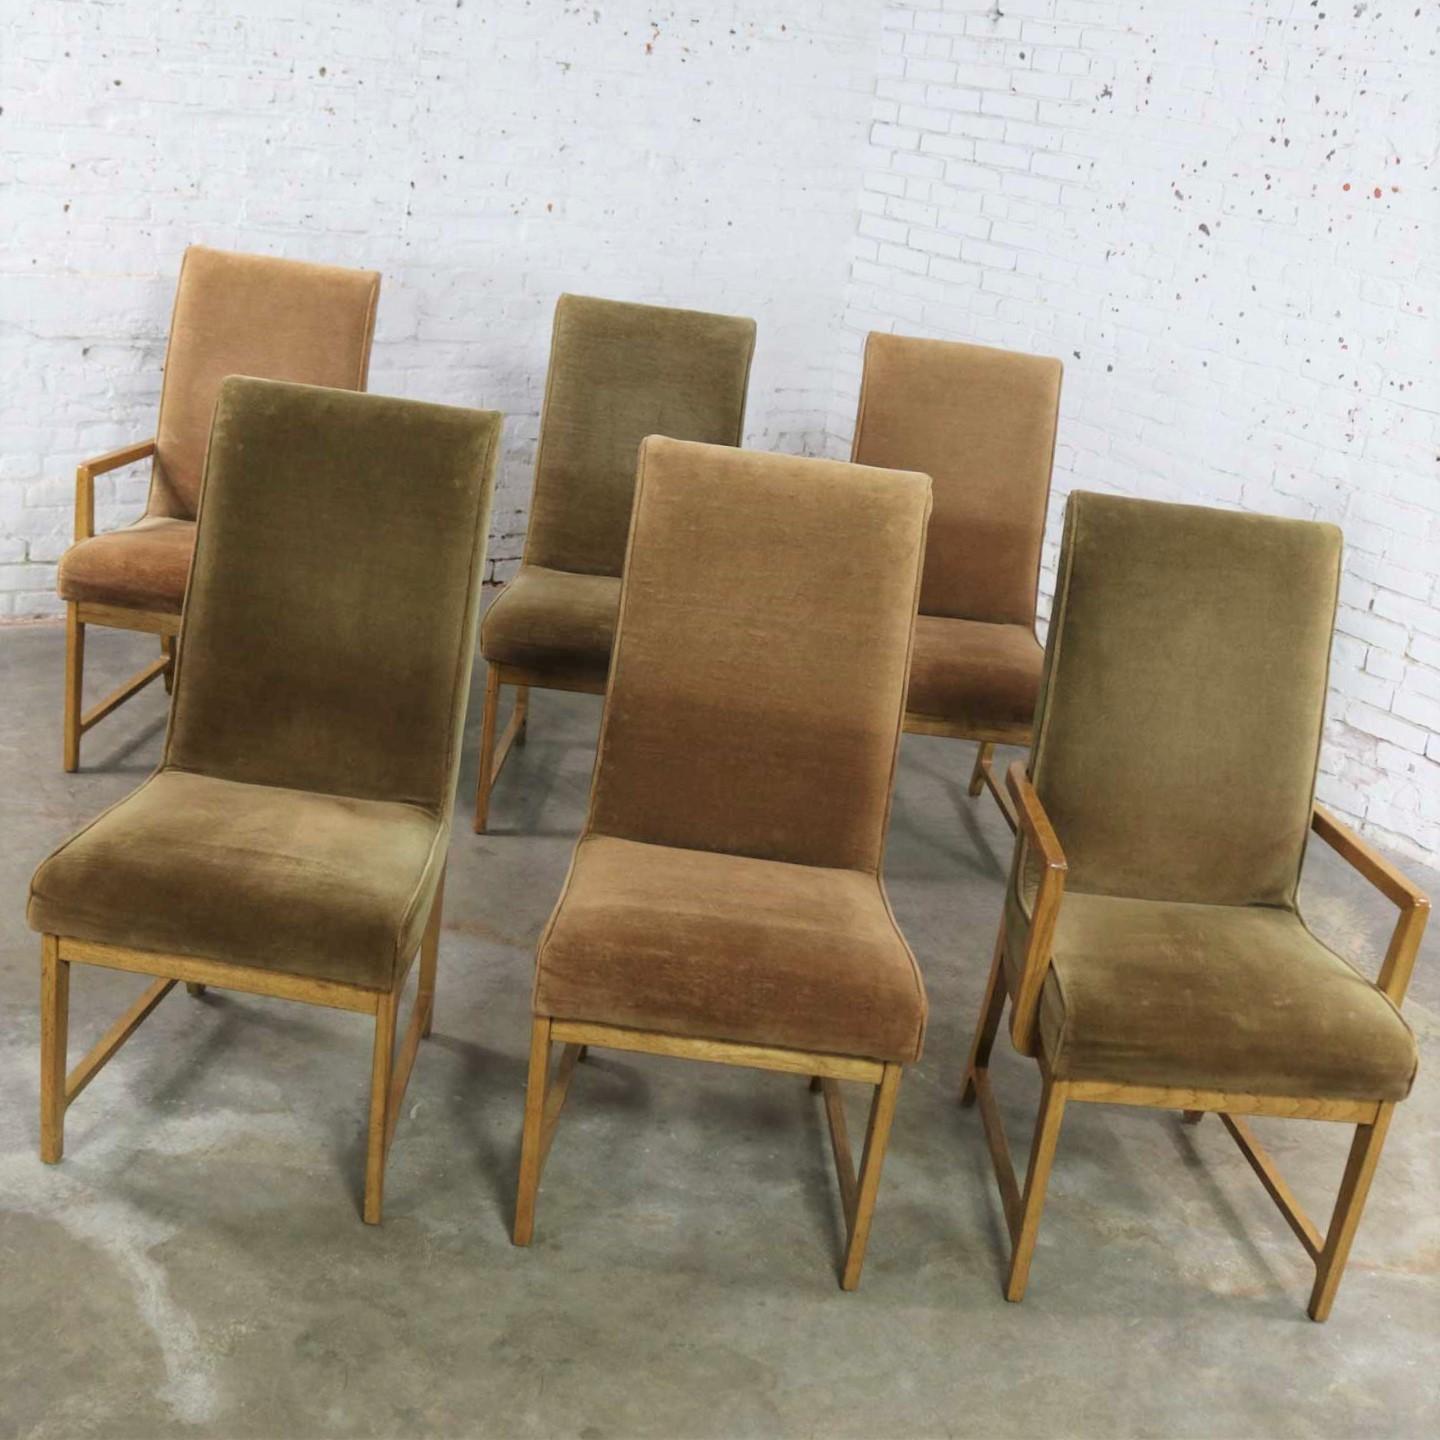 6 Modern Style Vintage Dining Chairs Velvet Scoop Seats Bernhardt Flair Hibriten 2